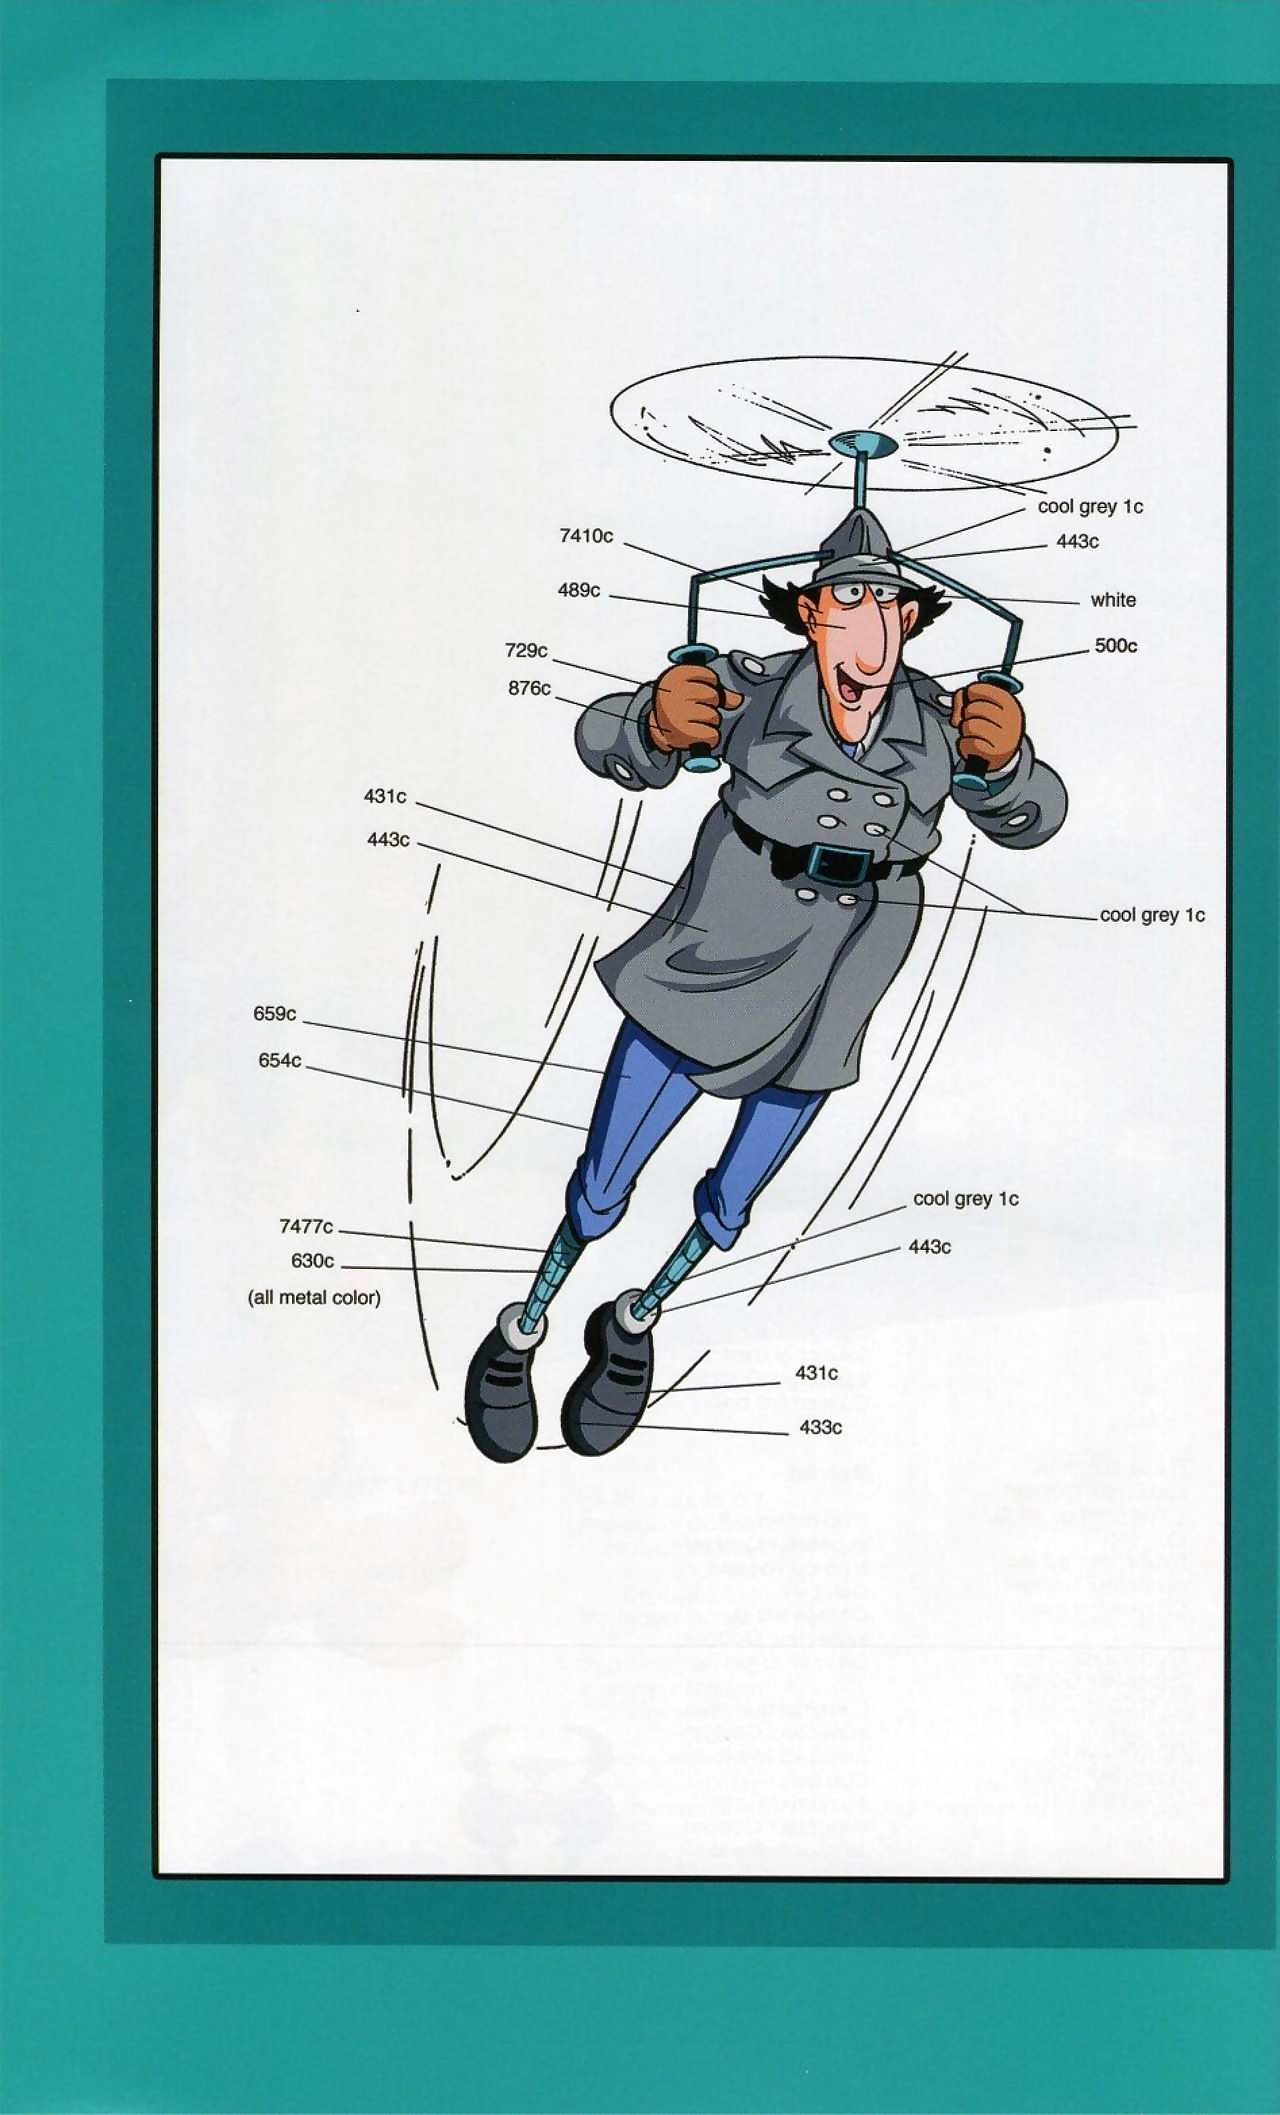 Inspector Equipment Artbook - affixing 2